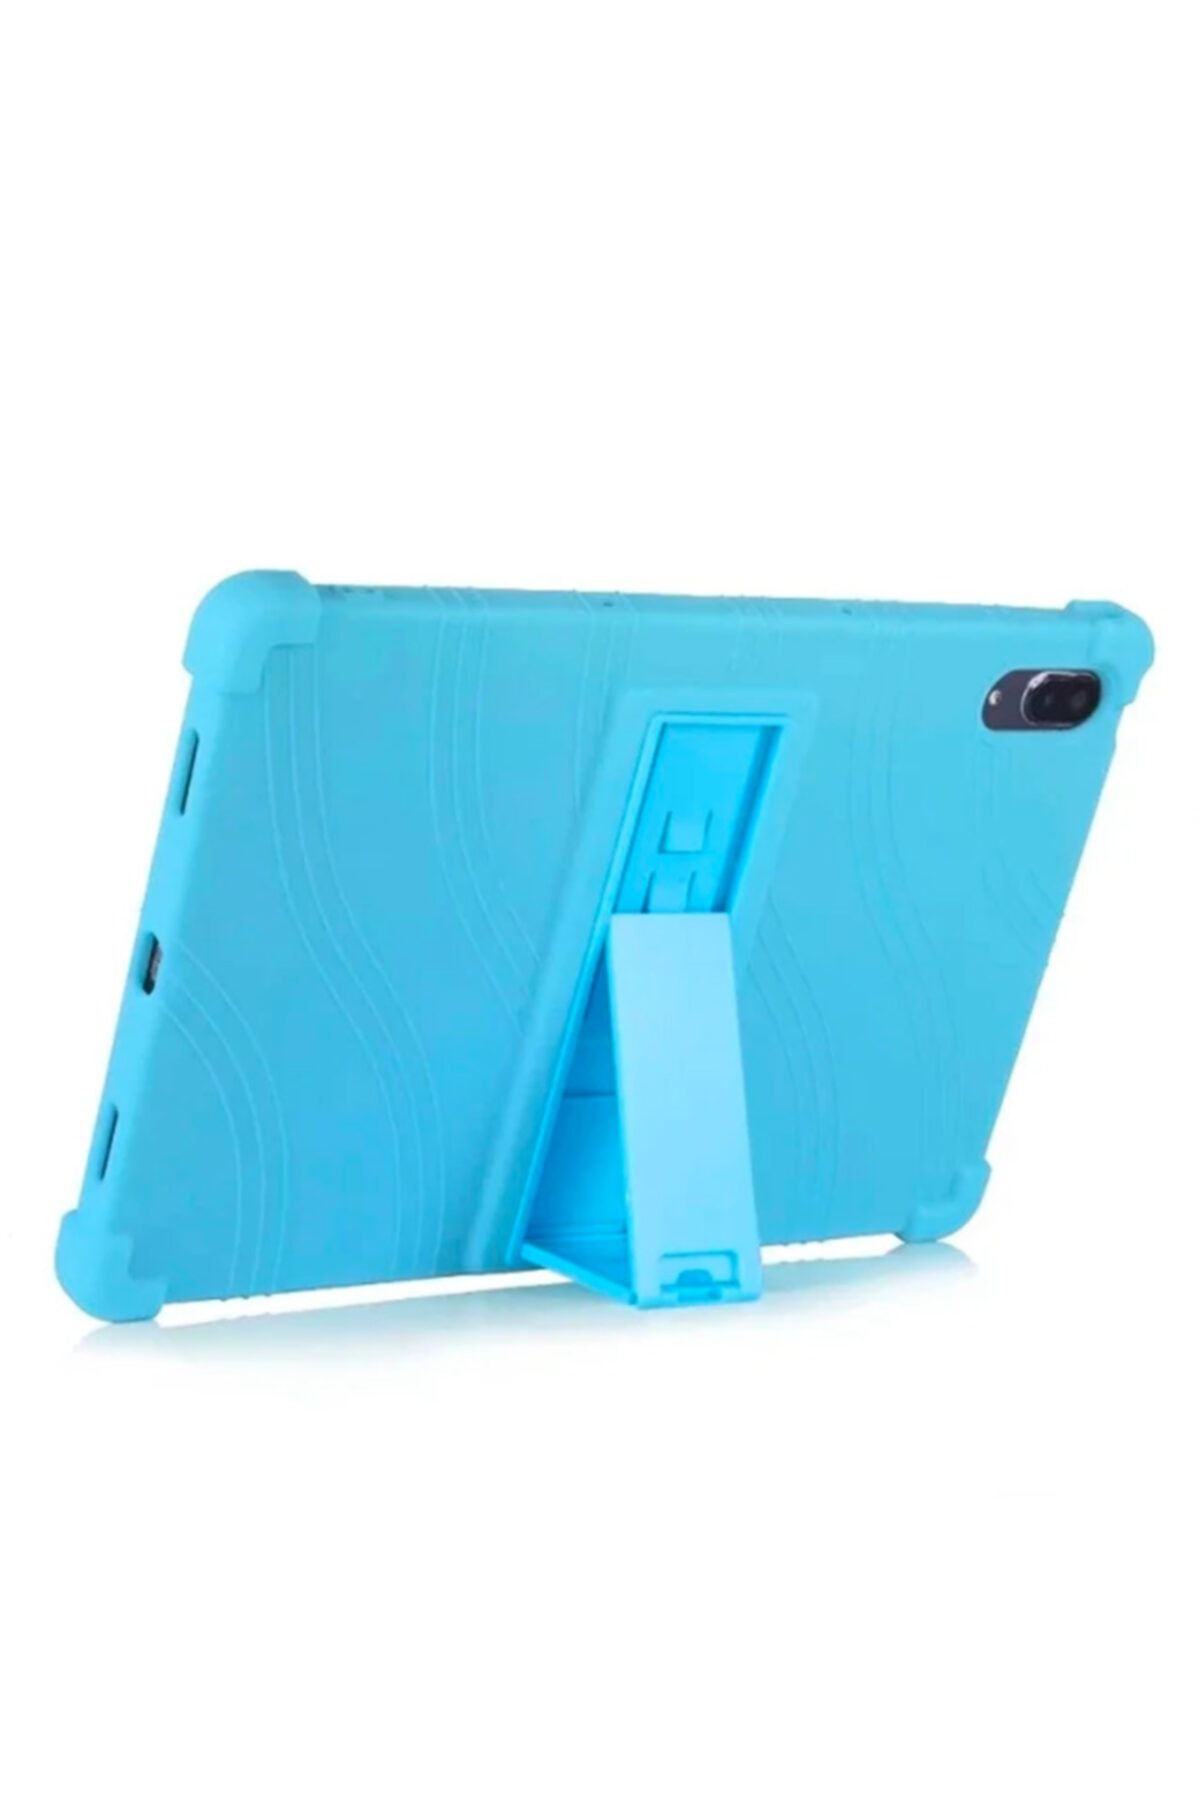 Ally Mobile Ally Lenovo Tab P11 Pro Tb-j706 Standlı Silikon Kılıf Tablet Kılıfı Açık Mavi